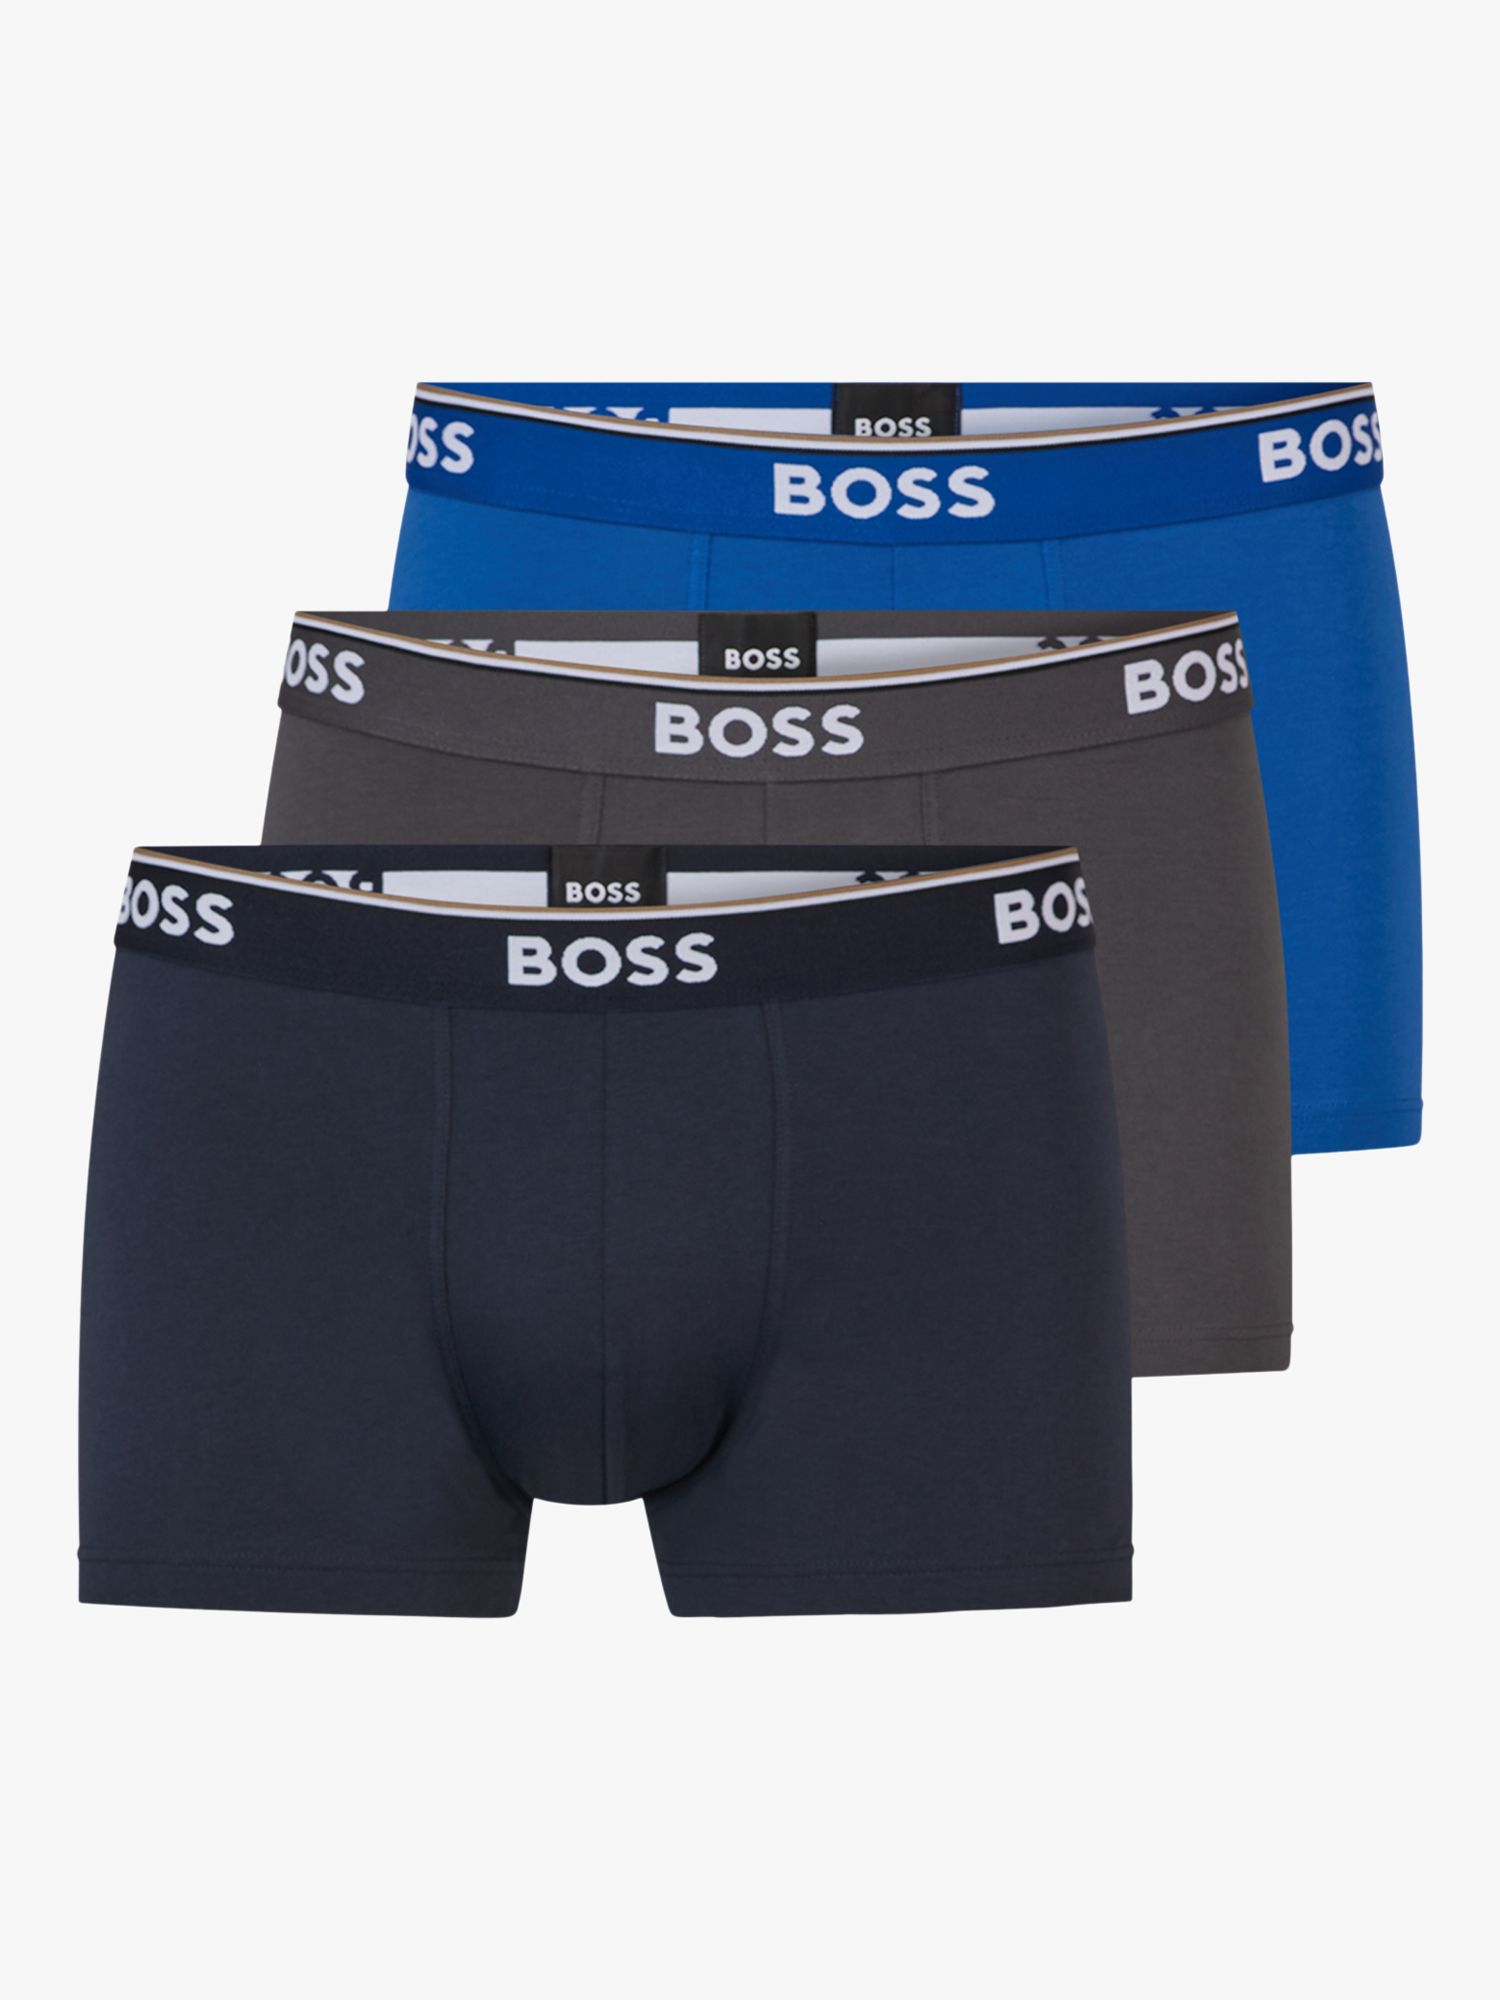 BOSS Power Cotton Logo Waistband Trunks, Pack of 3, Open Blue at John ...